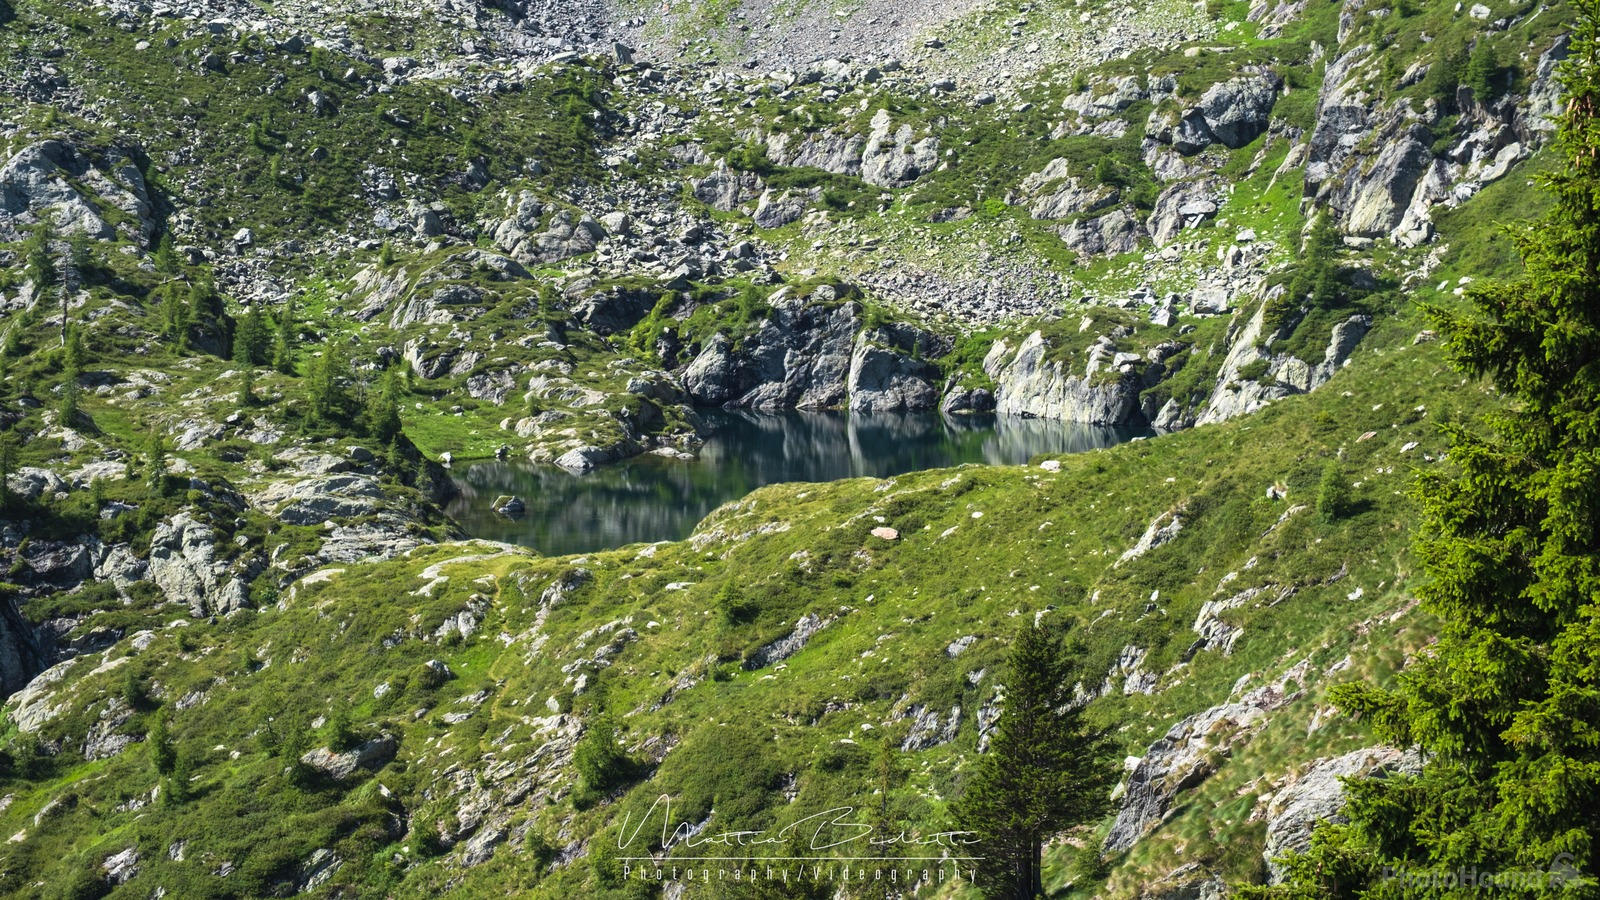 Image of Lago Lavazza by Mattia Bedetti